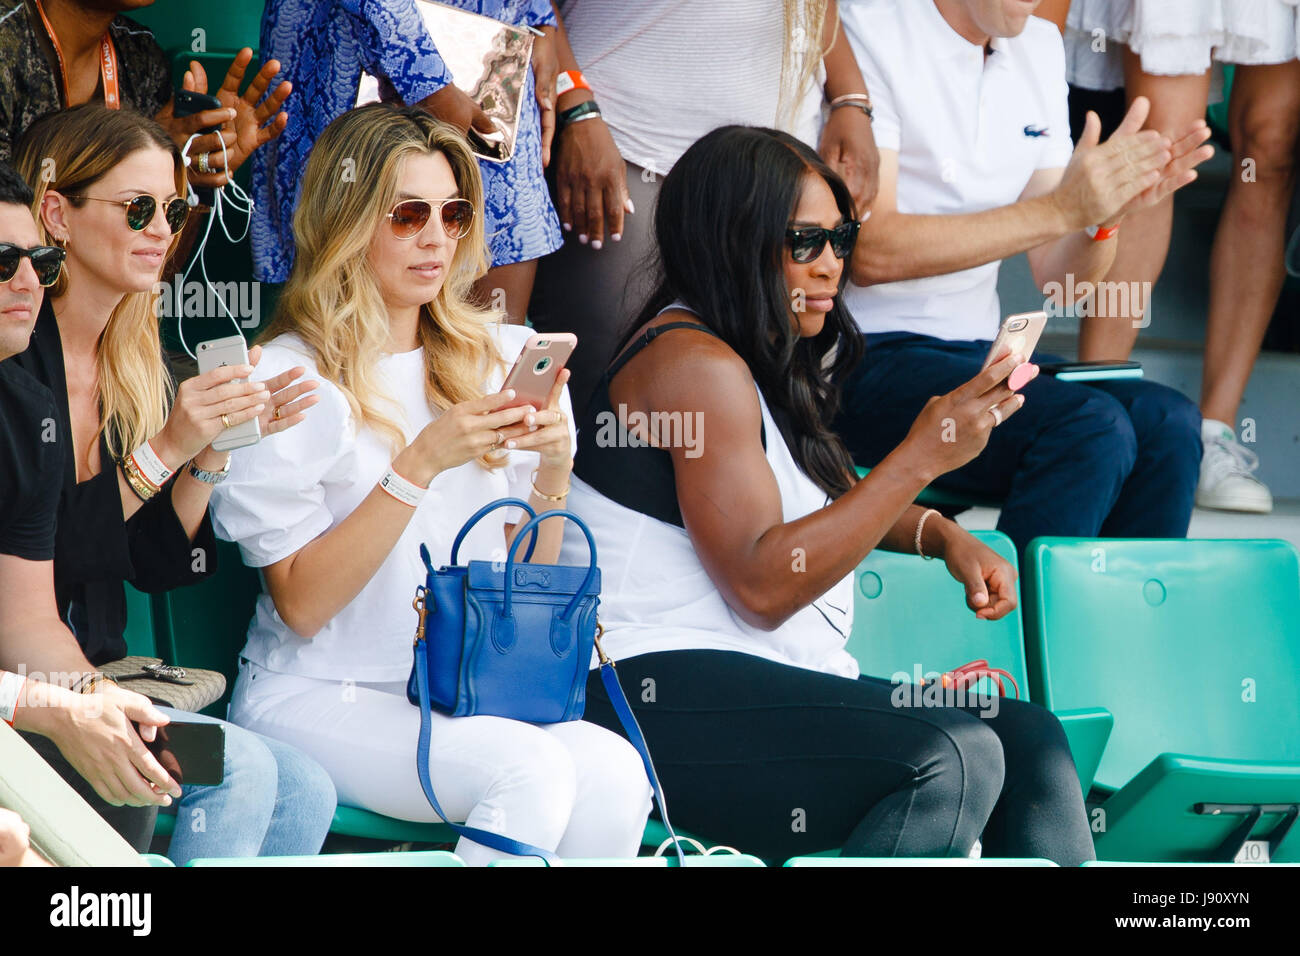 Paris, France, 31 mai 2017 : Serena Williams prend des photos avec son smartphone pendant ses sœurs deuxième tour à l'Open de France de tennis 2017 à Roland Garros Paris. crédit : Frank molter/Alamy live news Banque D'Images